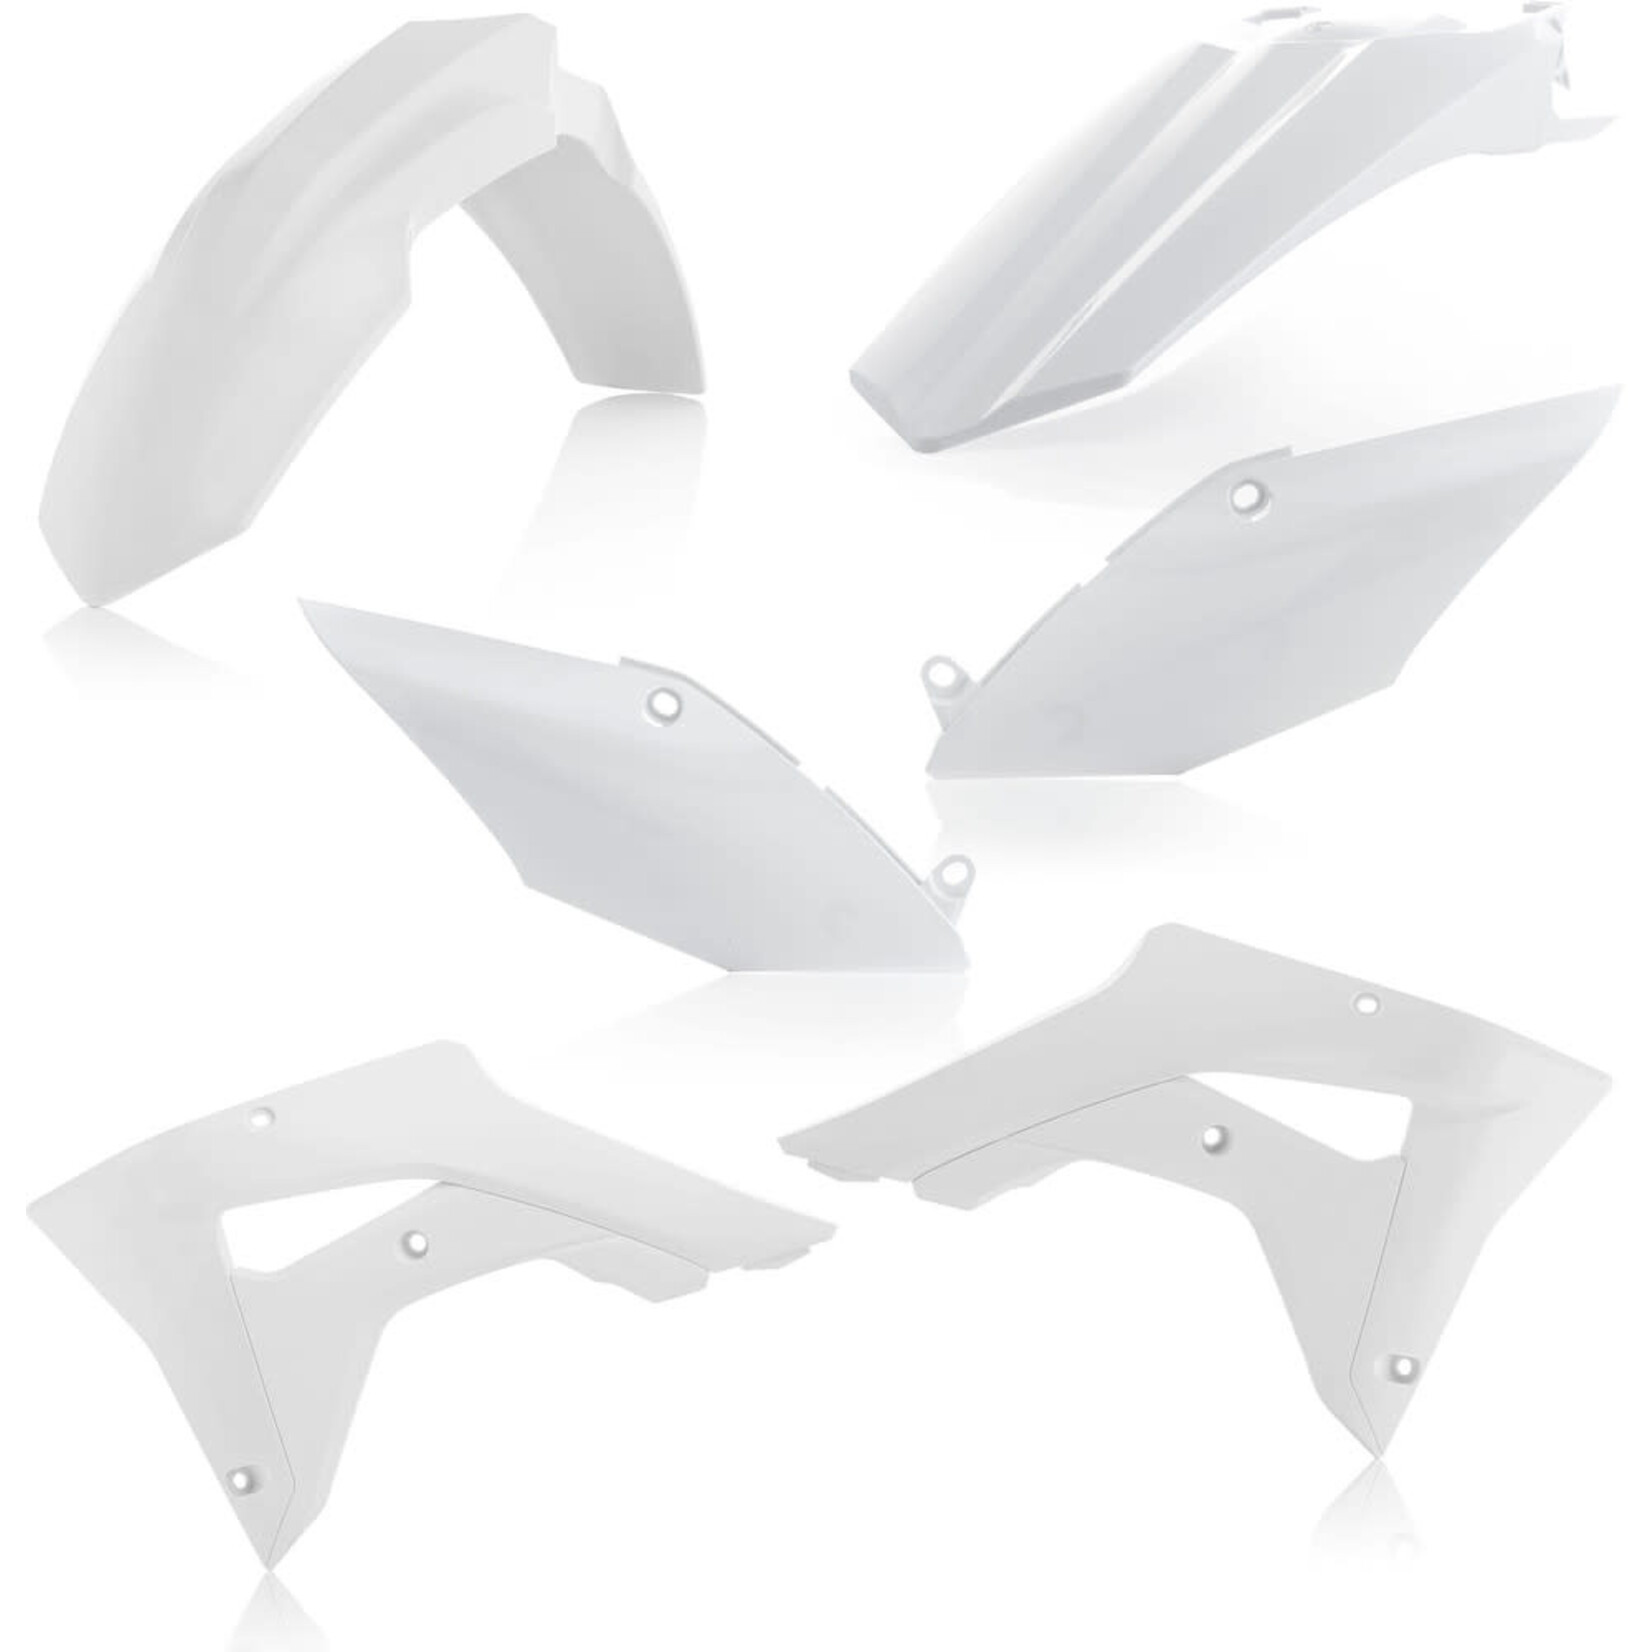 ACERBIS ACERBIS PLASTIC KIT WHITE HONDA CRF450RX '17-'20